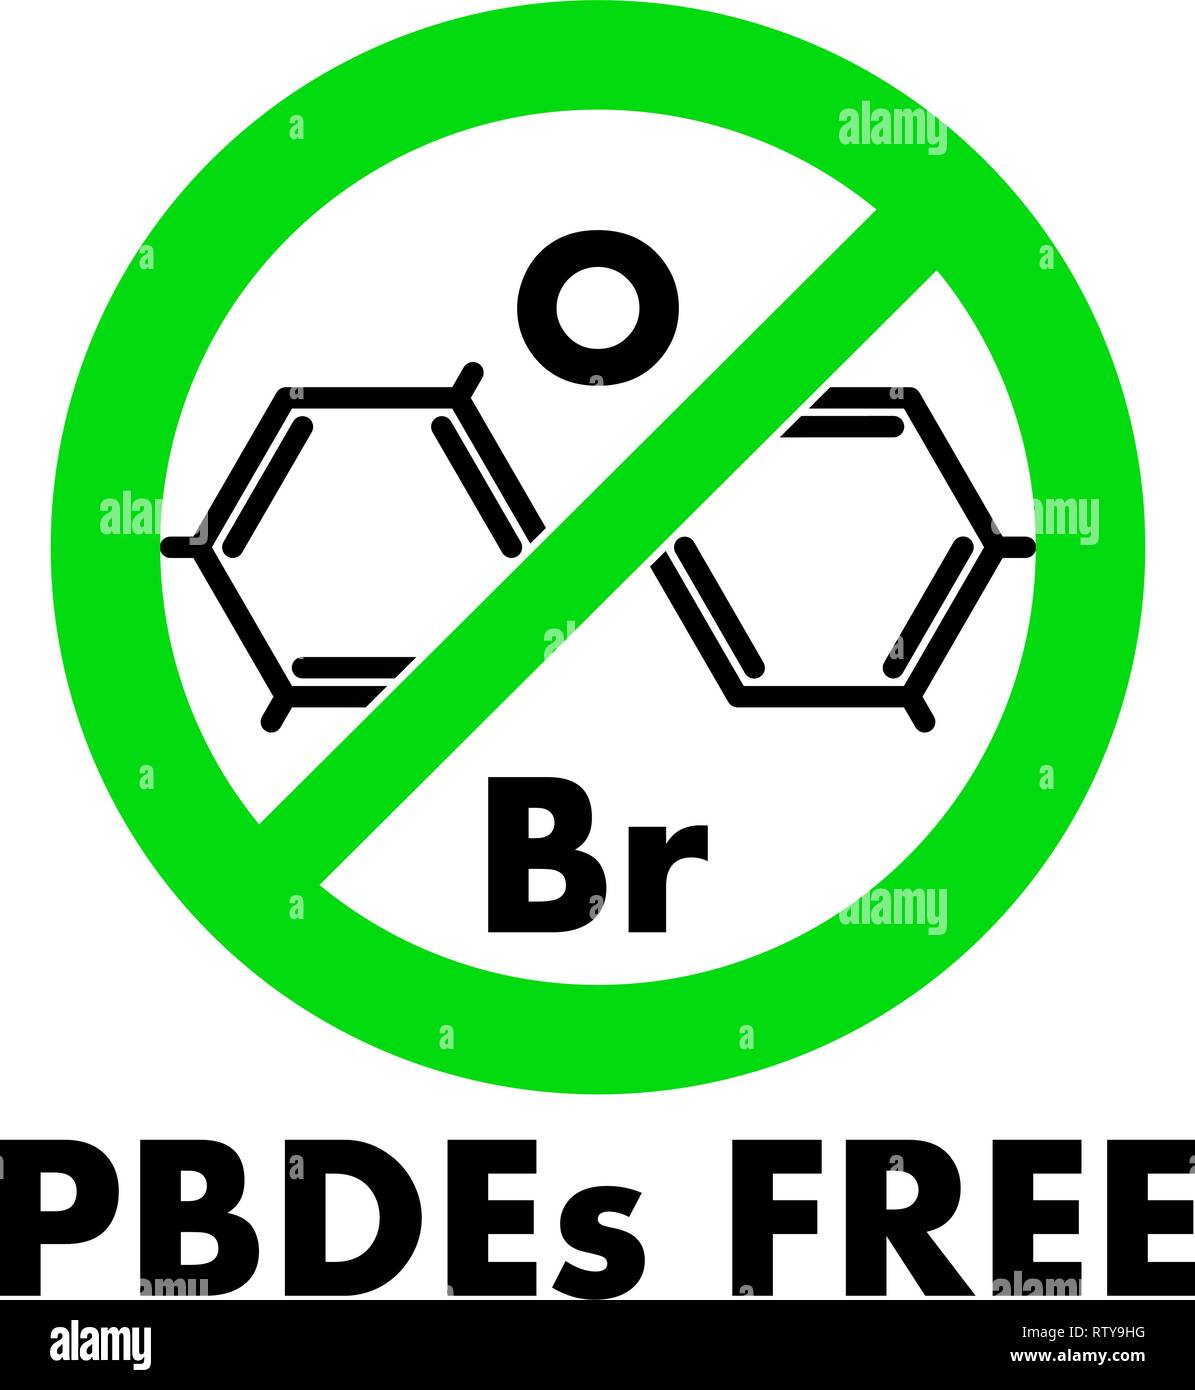 PBDEs Free Icon. Polybromierte Diphenylether chemische Molekül und Buchstaben Br und O (chemische Symbole für Brom und Sauerstoff) in Grün gekreuzt Circ. Stock Vektor